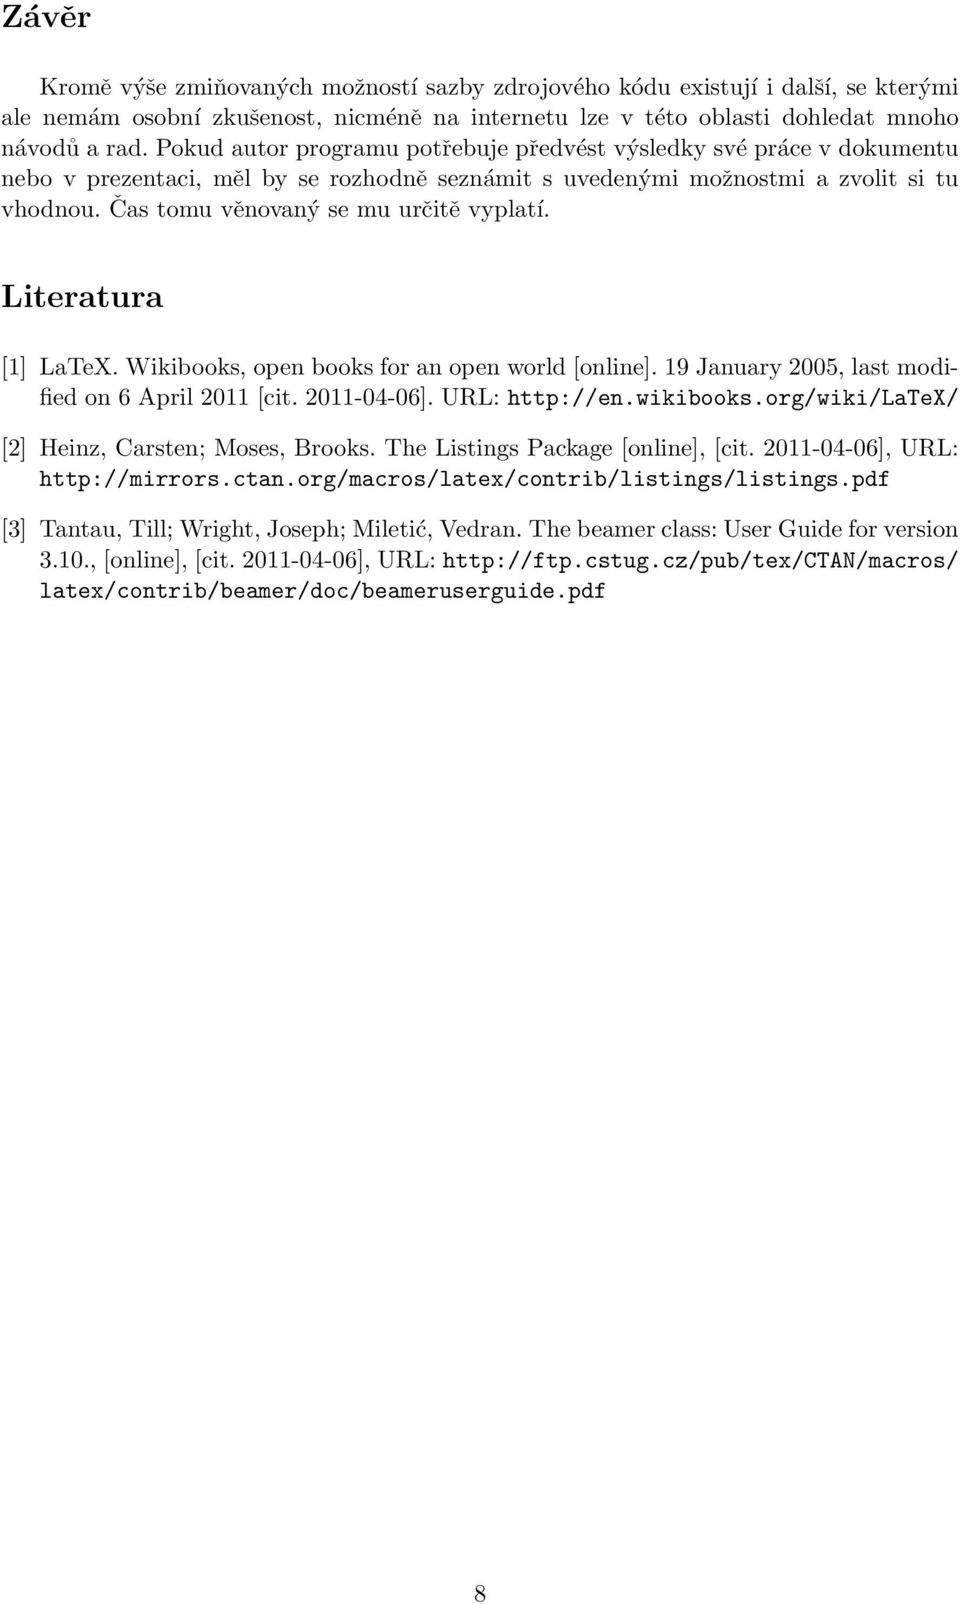 Čas tomu věnovaný se mu určitě vyplatí. Literatura [1] LaTeX. Wikibooks, open books for an open world [online]. 19 January 2005, last modified on 6 April 2011 [cit. 2011-04-06]. URL: http://en.